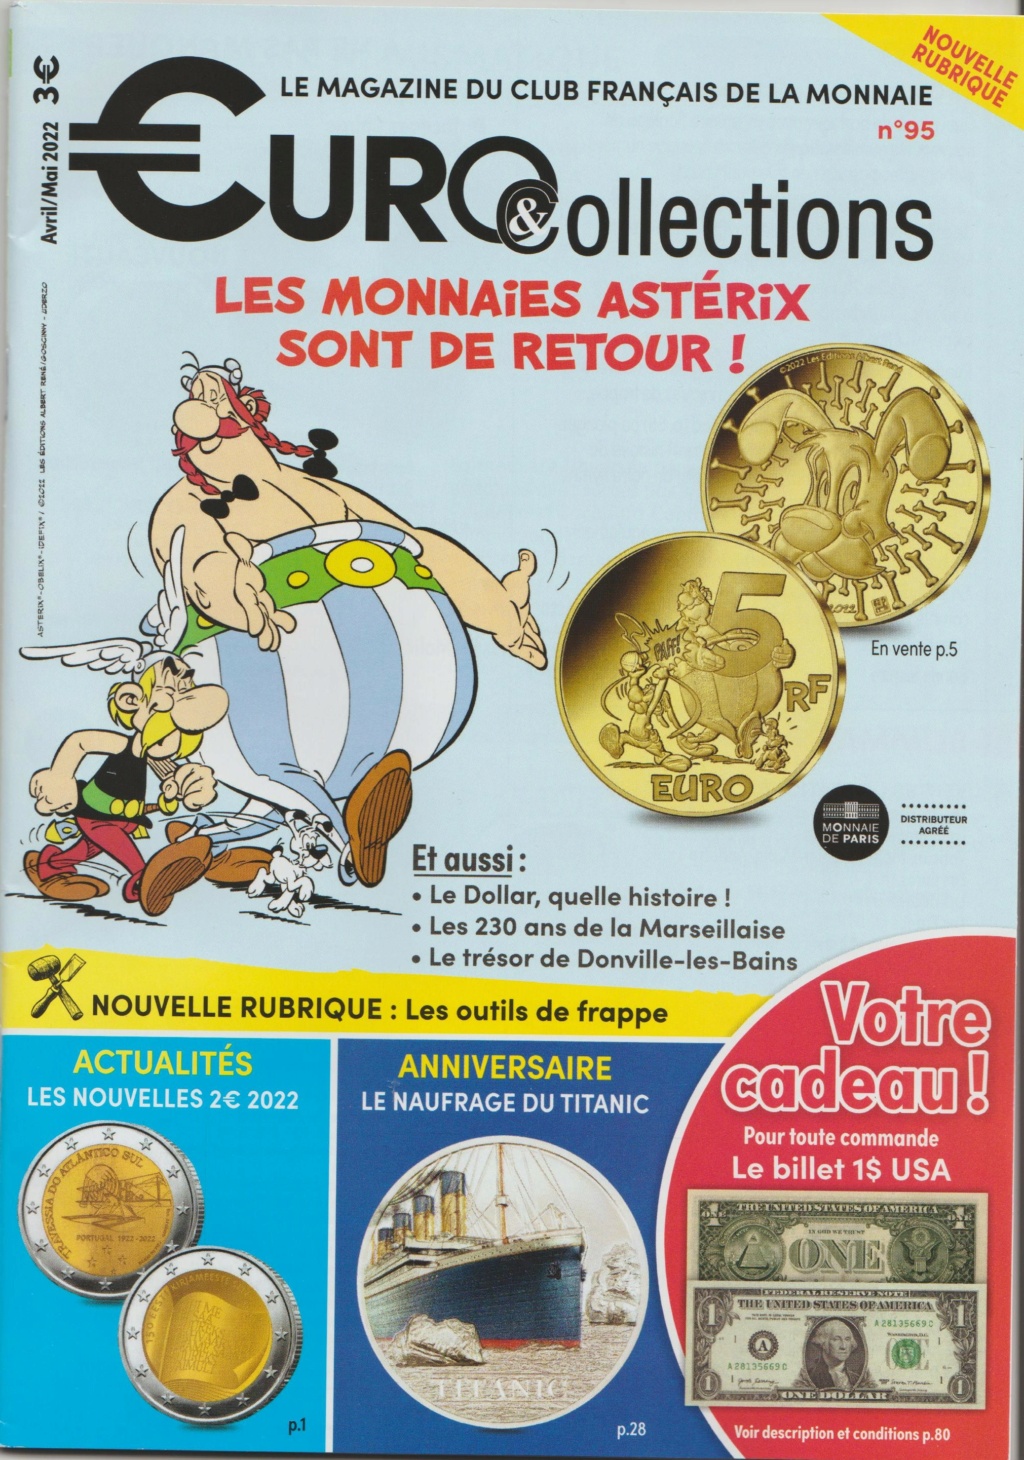 Collectionnez les 12 mini-médailles exclusives avec Astérix:  Monnaie de Paris - Page 2 Tresor10